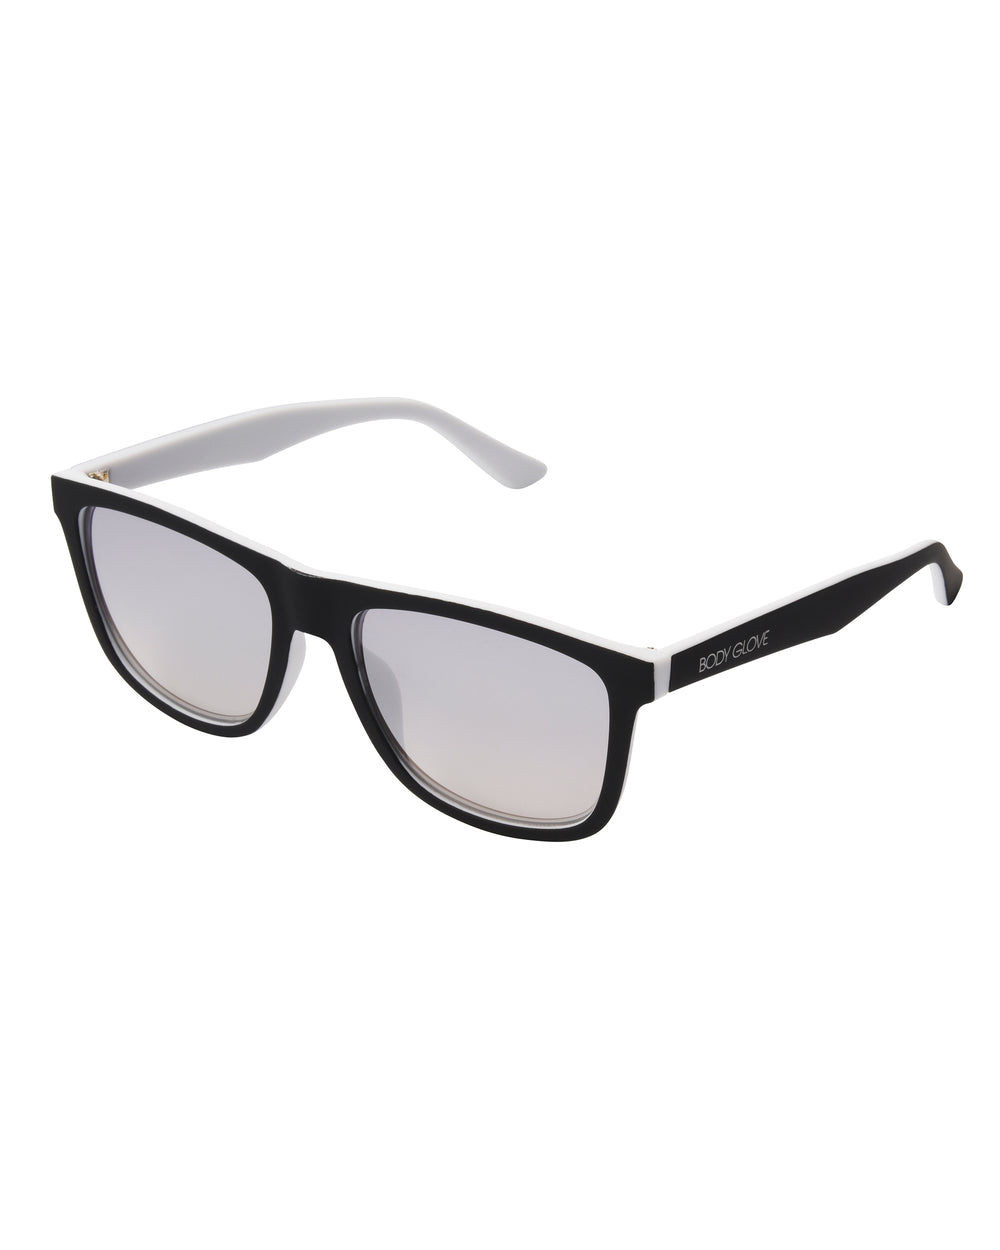 Men's BGM 2014 Polarized Core Sunglasses - Grey - Body Glove